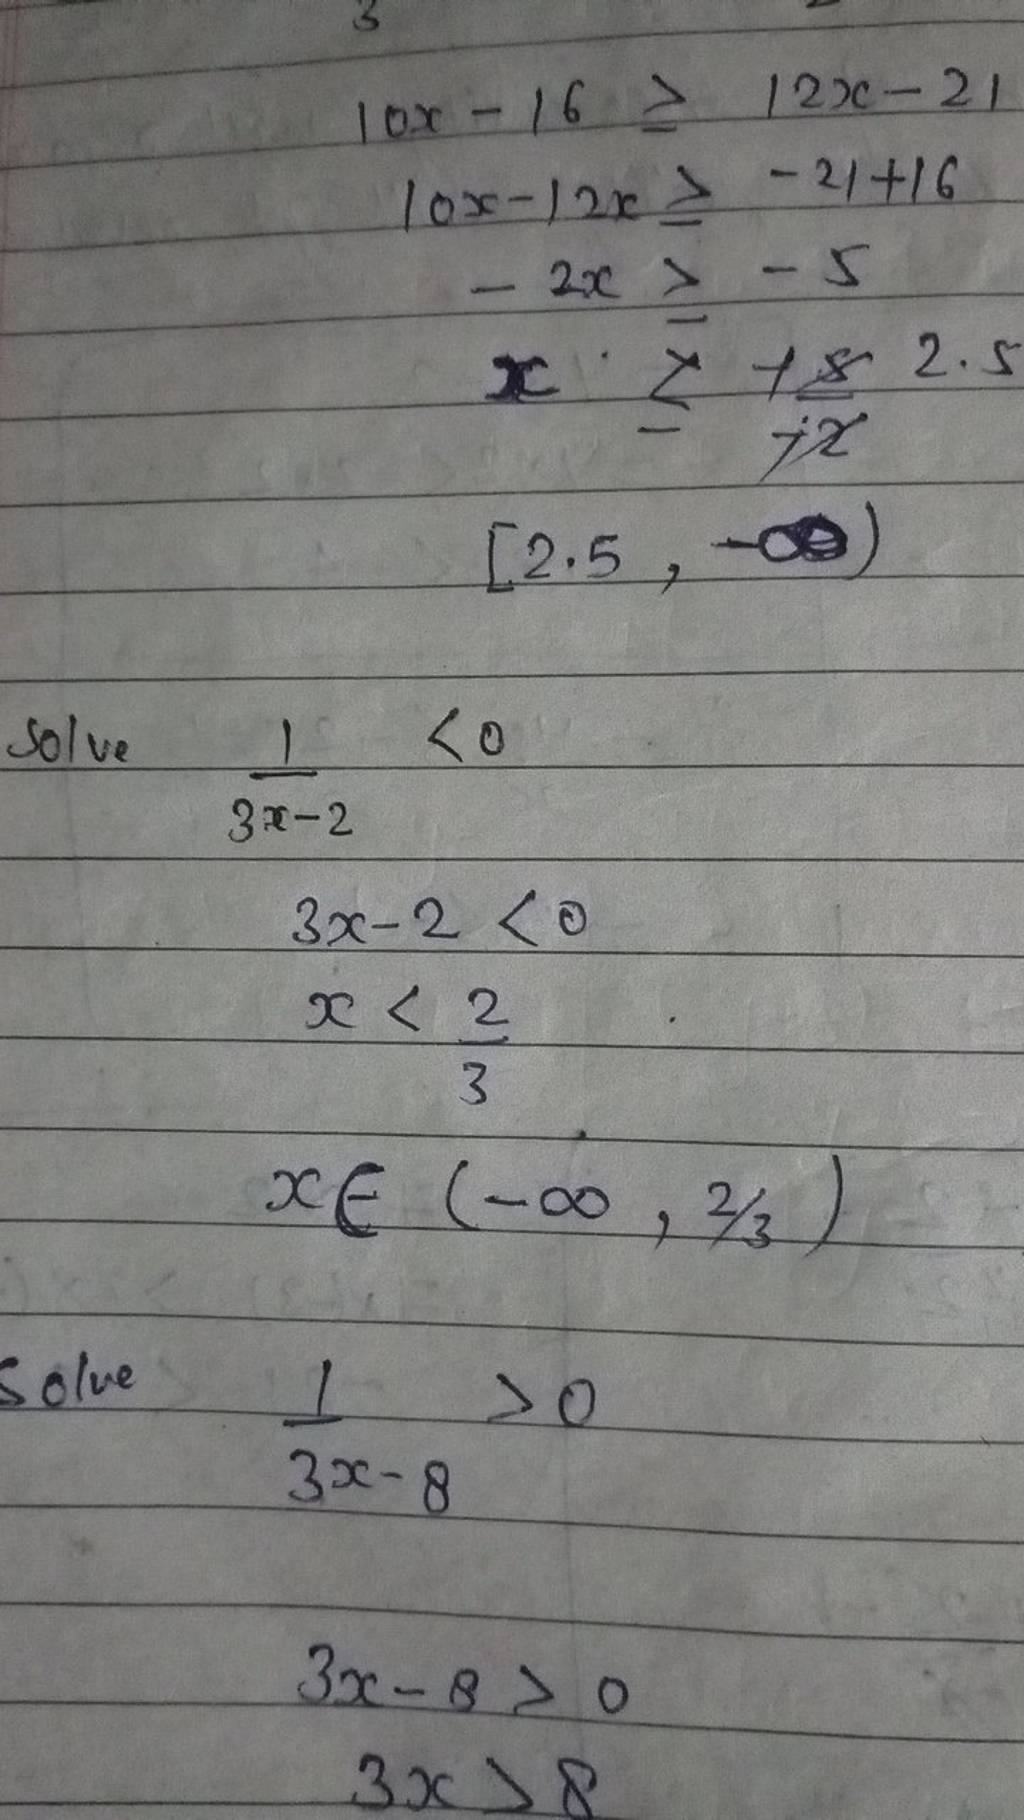 10x−16≥12x−2110x−12x≥−21+16−2x≥−5x≥xˉ+7x8​[2.5,−∞)​Solve3x−21​<03x−2<0